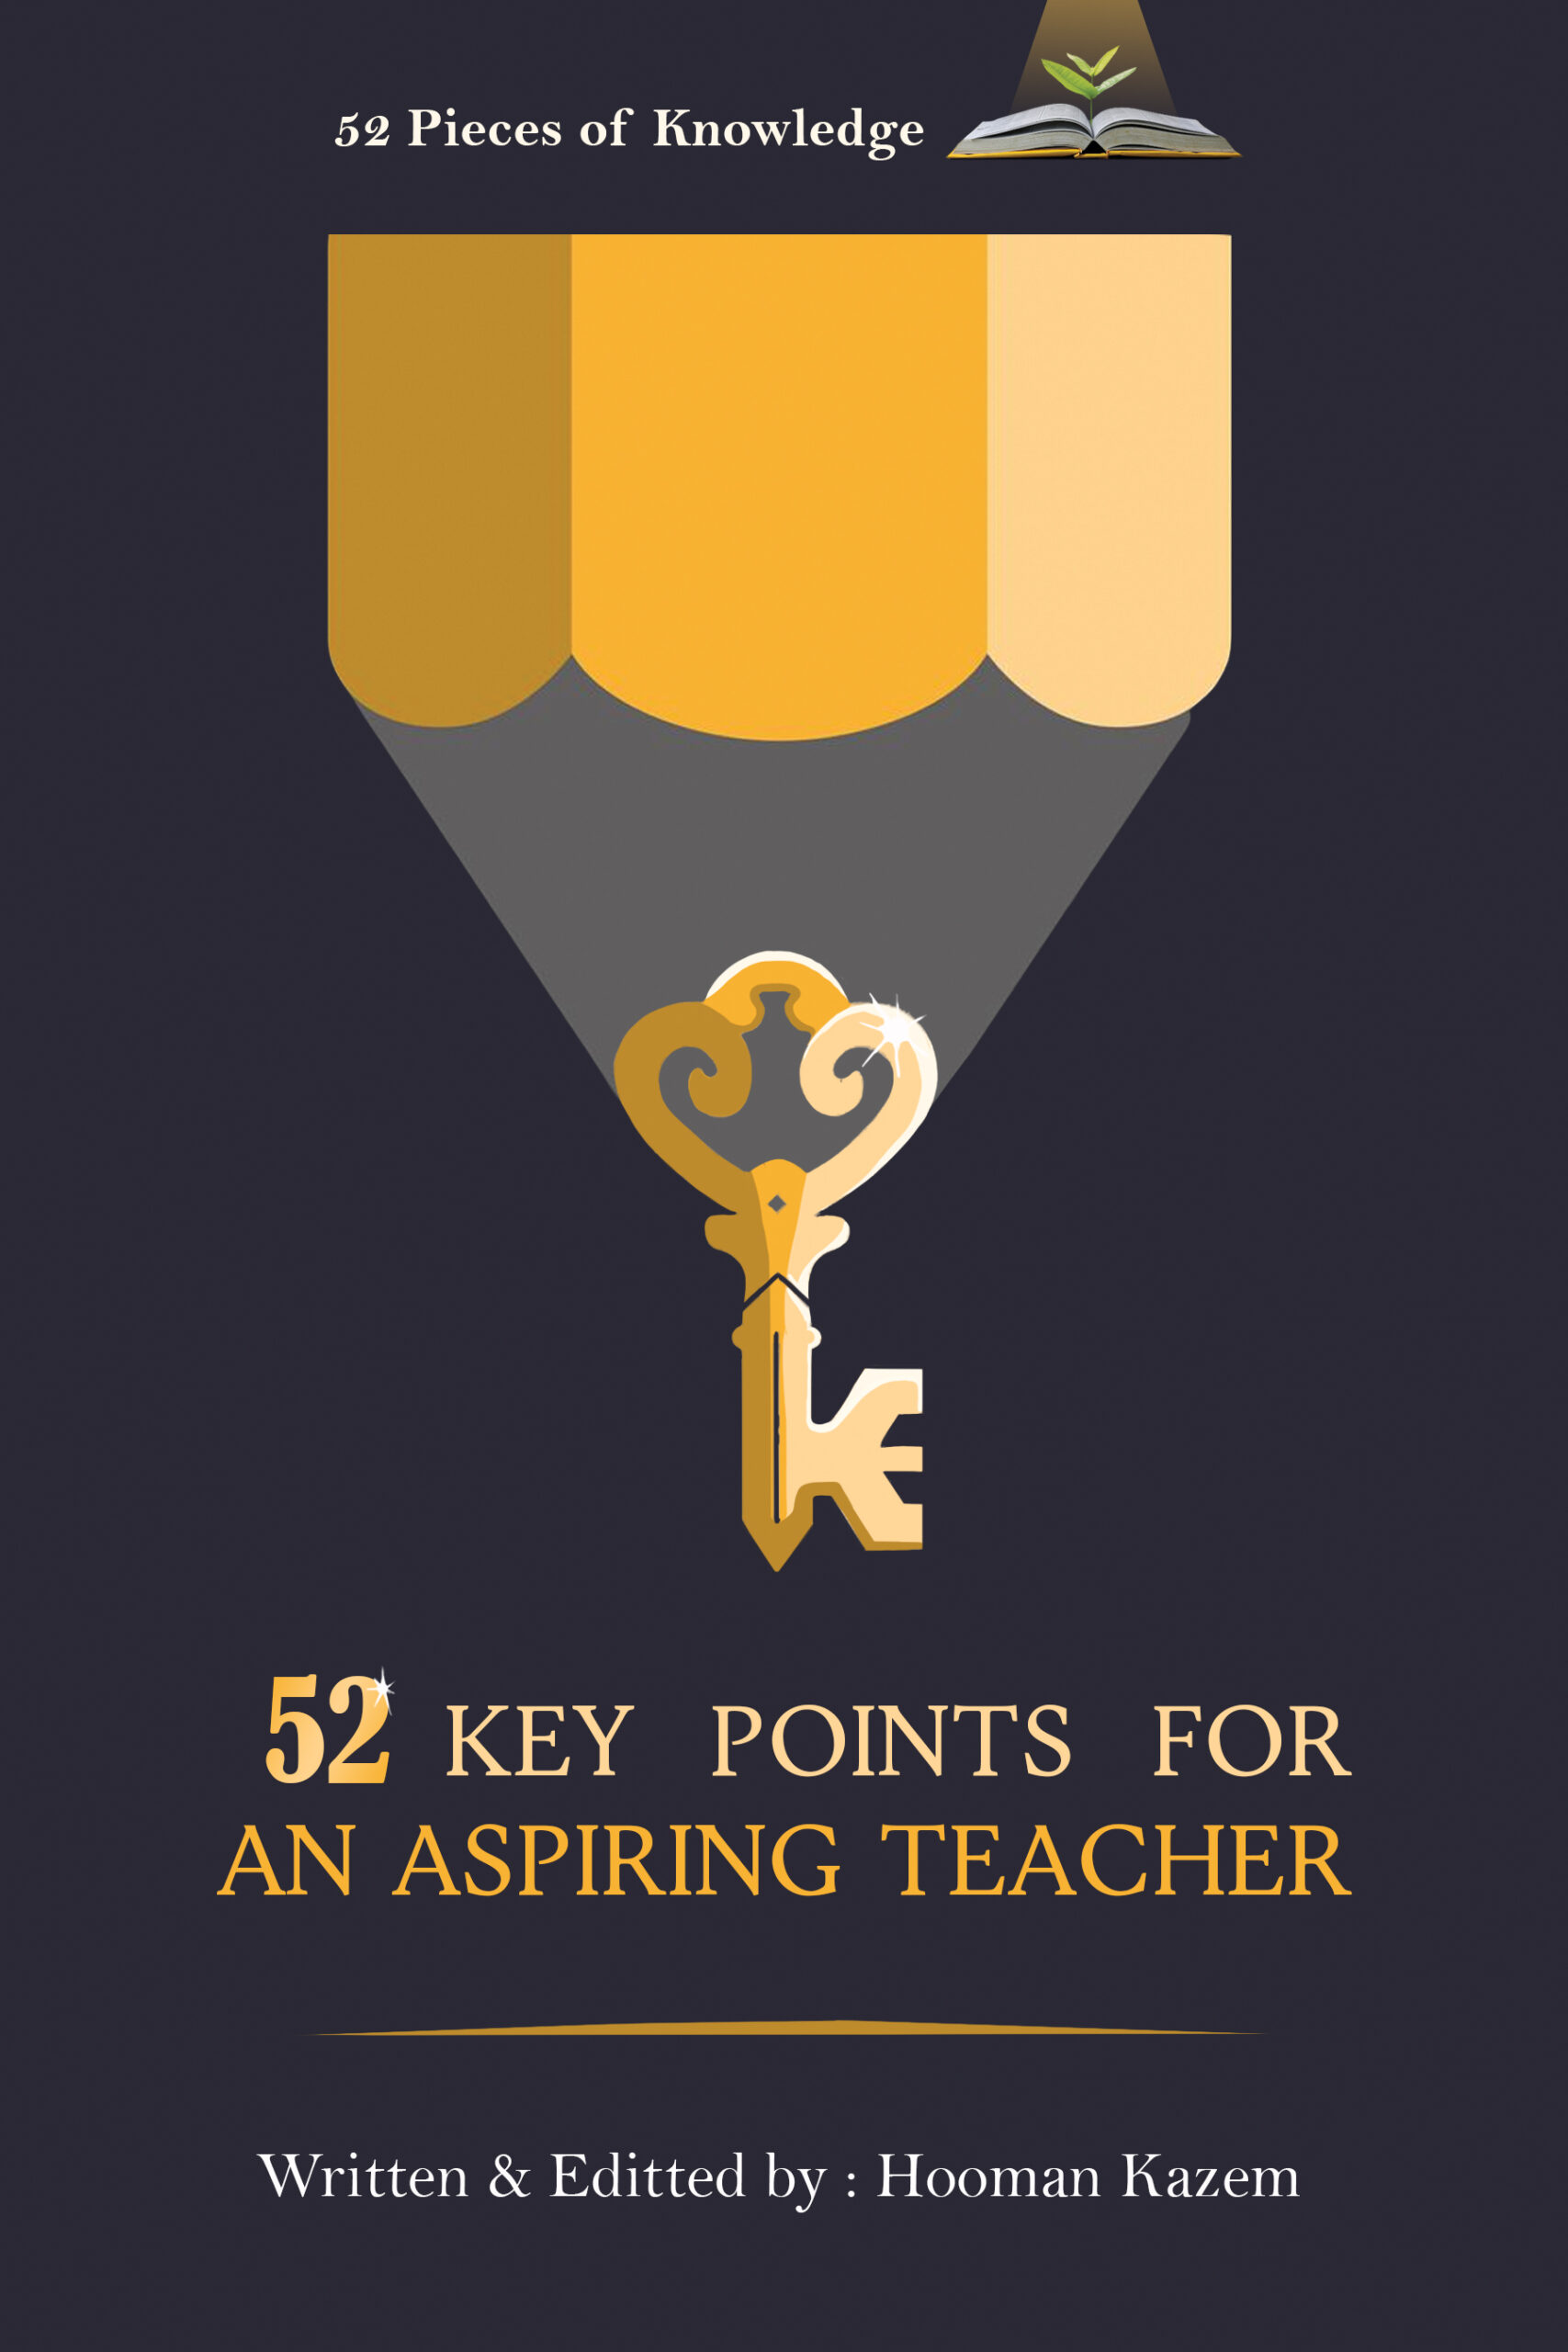 52 Key Points for an Aspiring Teacher